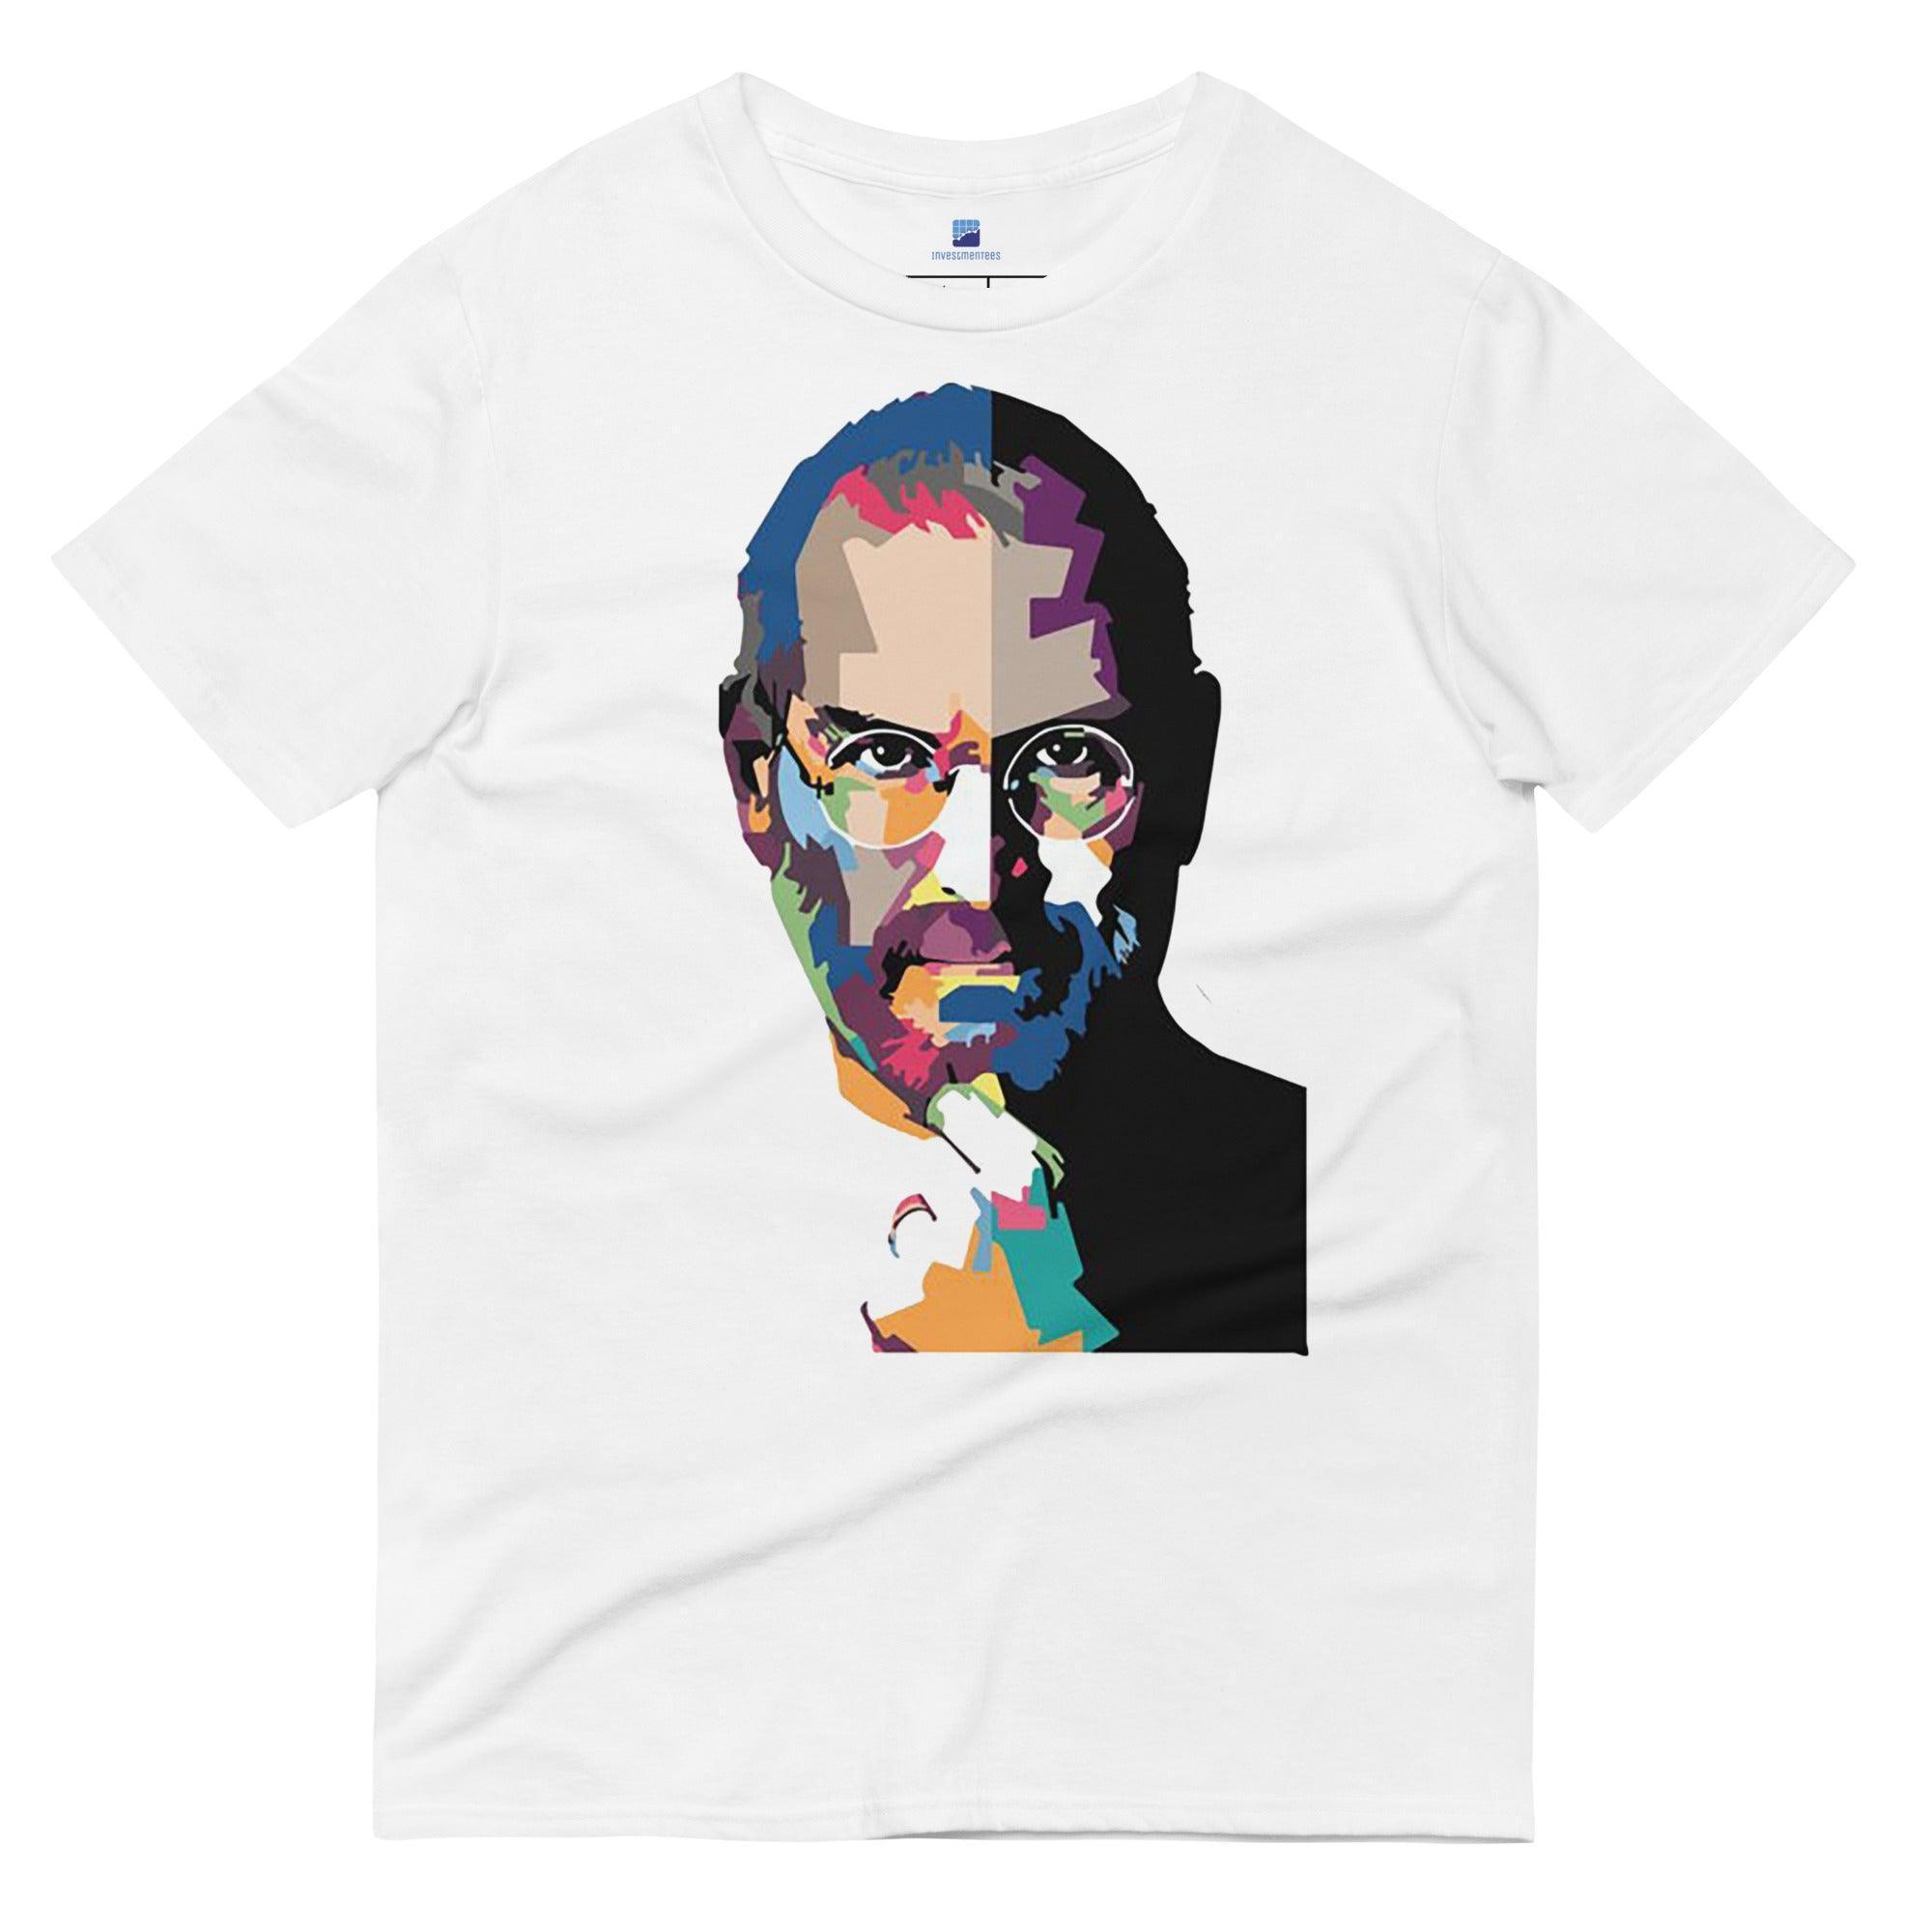 Steve Jobs Art T-Shirt - InvestmenTees